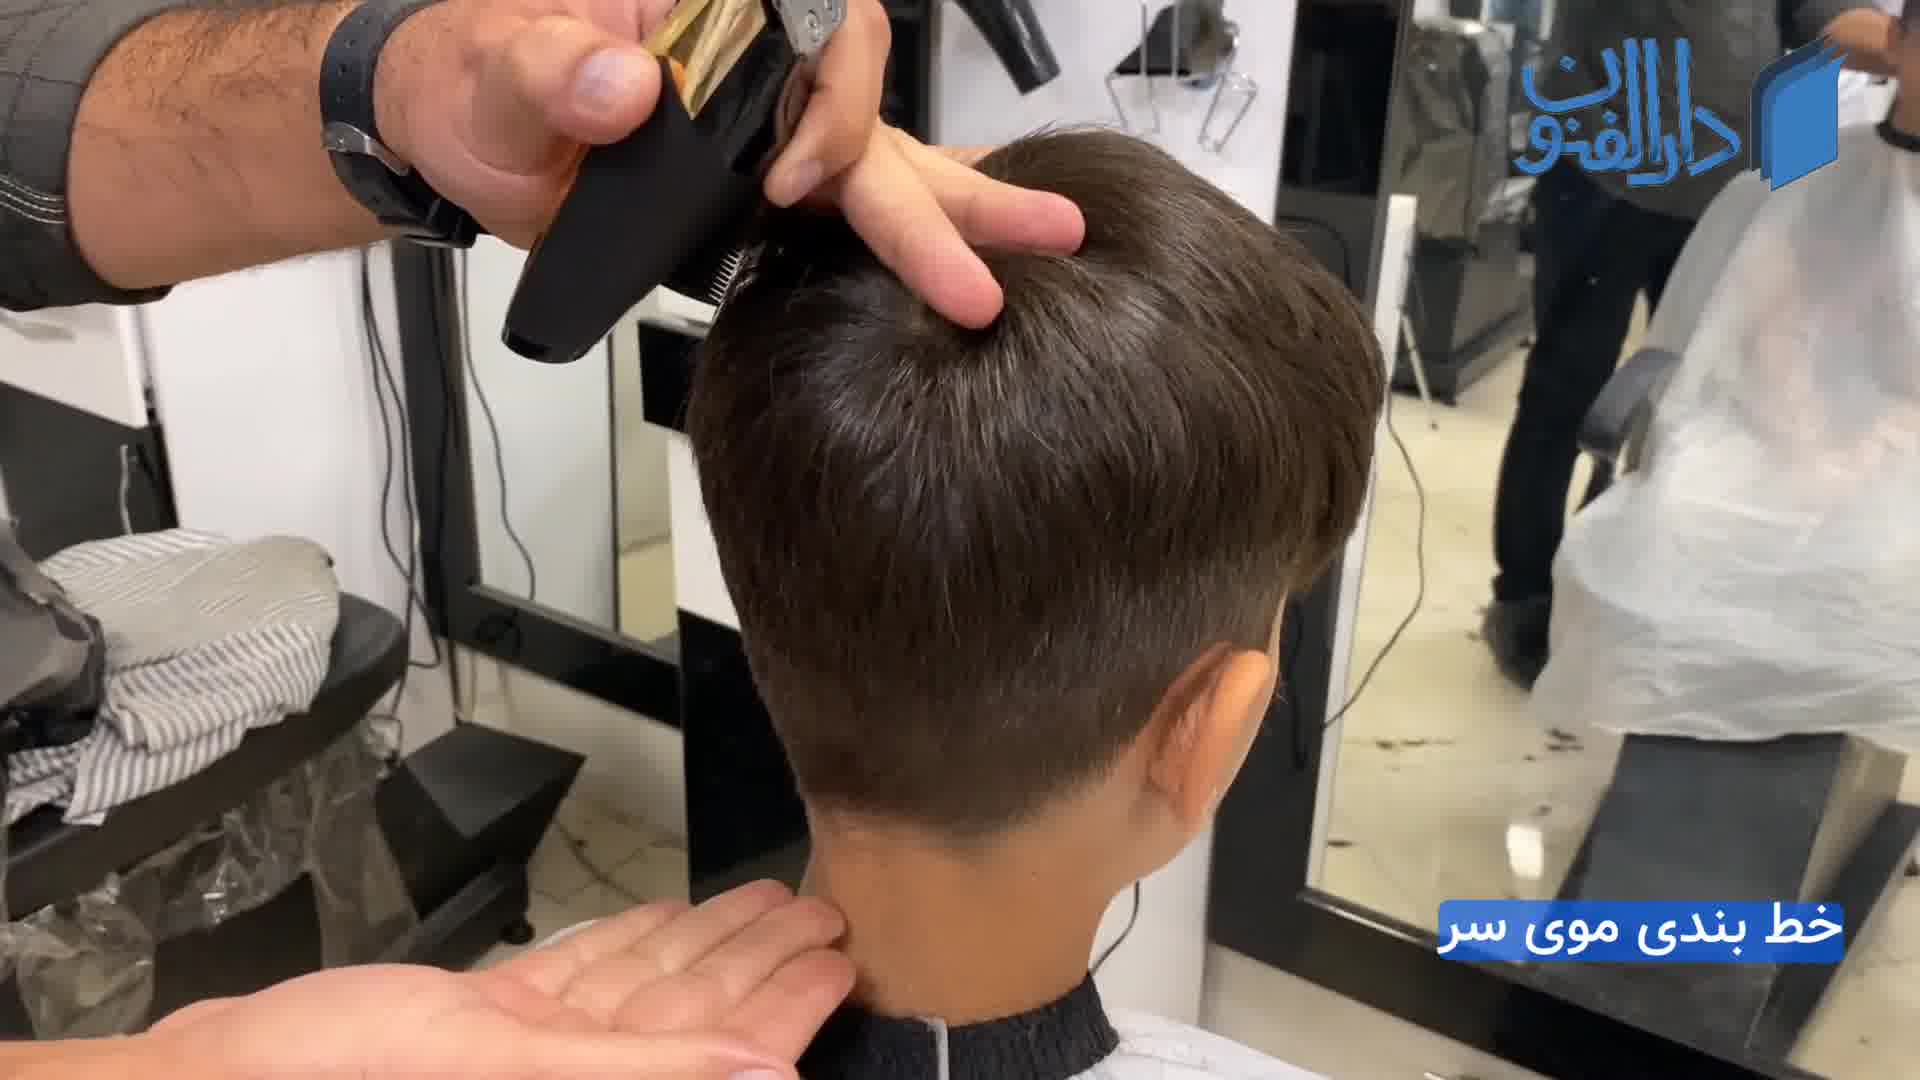 آموزش خط بندی و خط زنی موی سر - آموزش آرایشگری مردانه - آموزشگاه دارالفنون